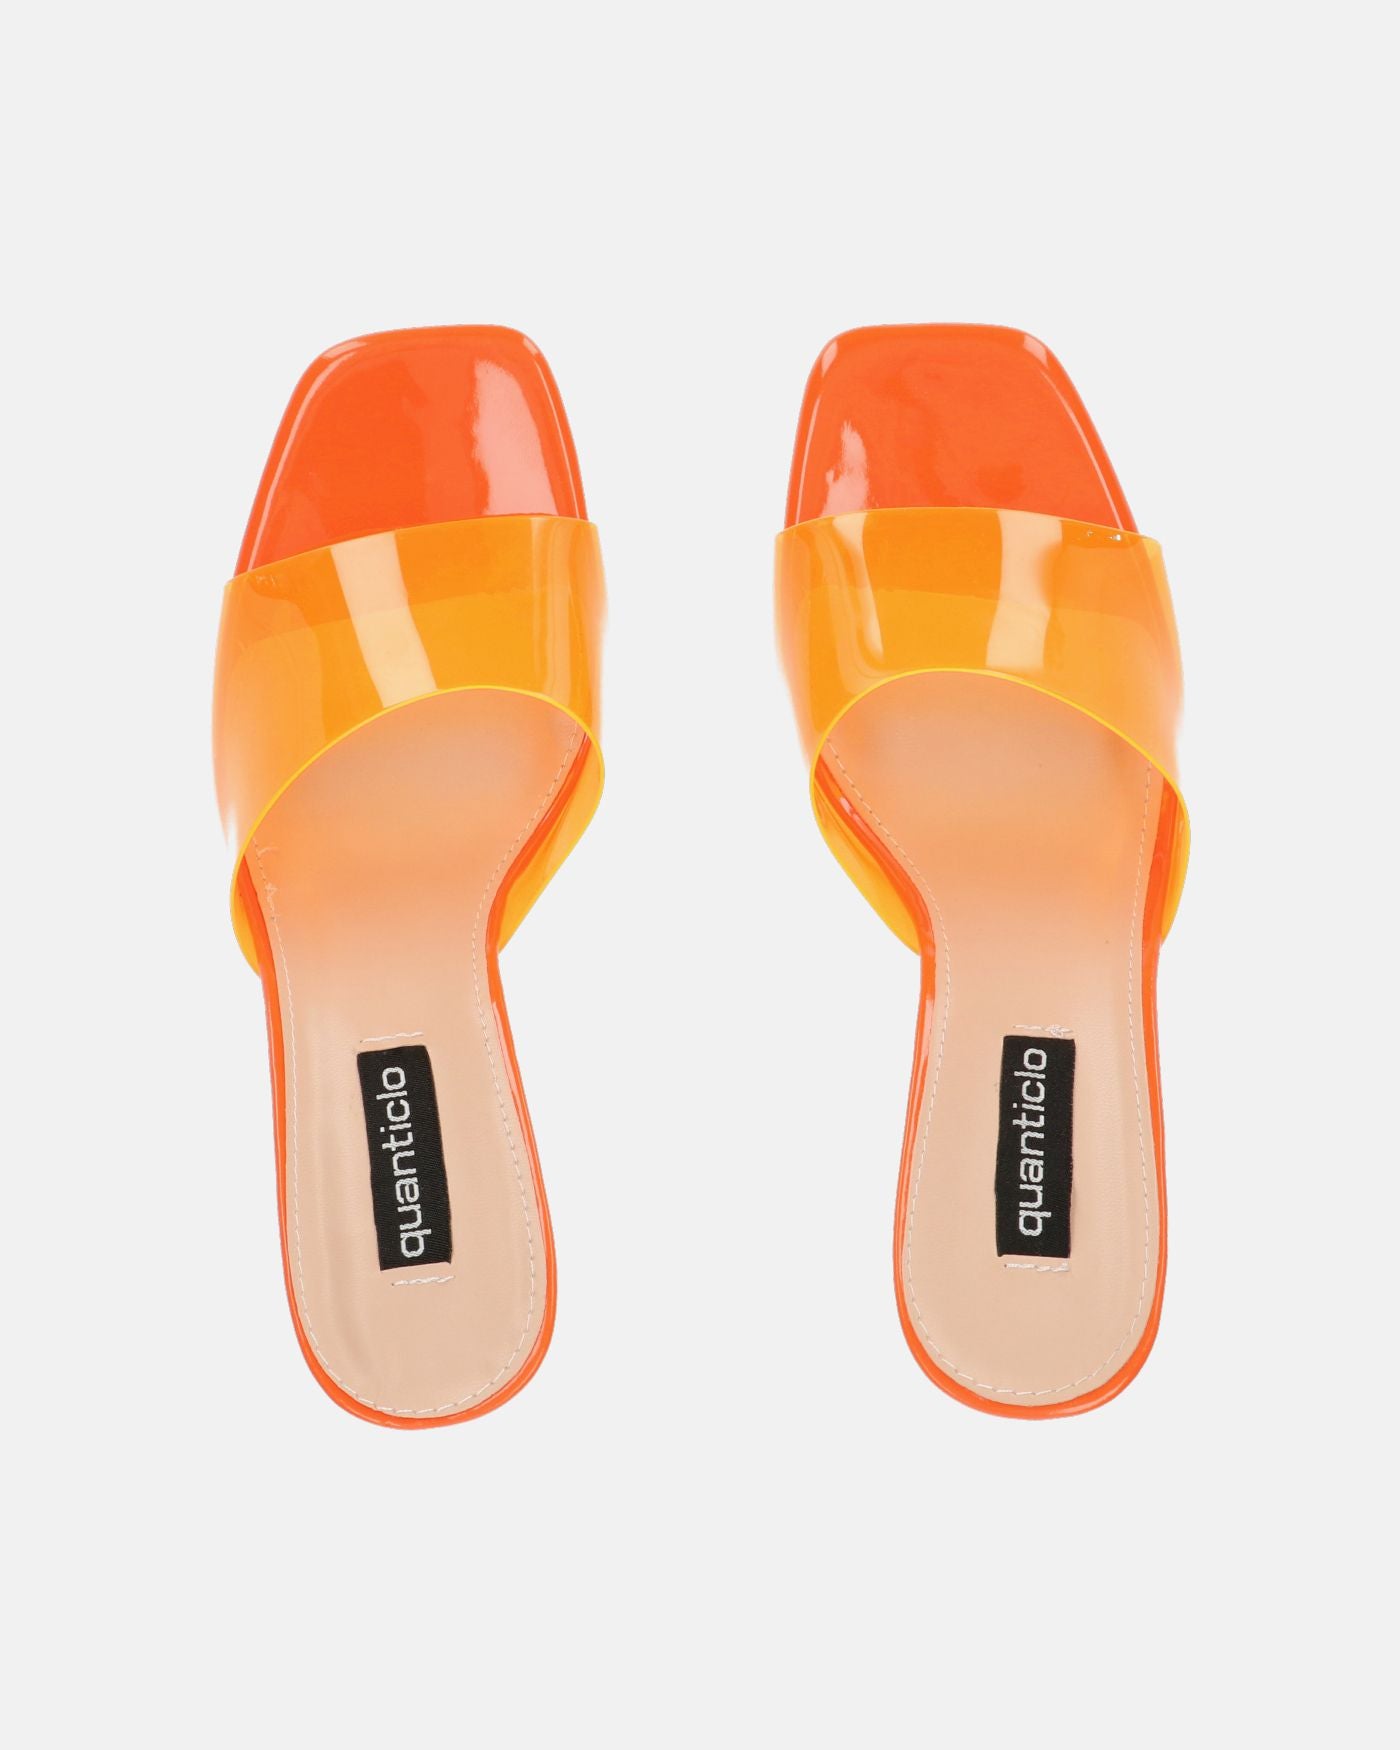 FIAMMA - sandalia de tacón en metacrilato naranja con suela de PU